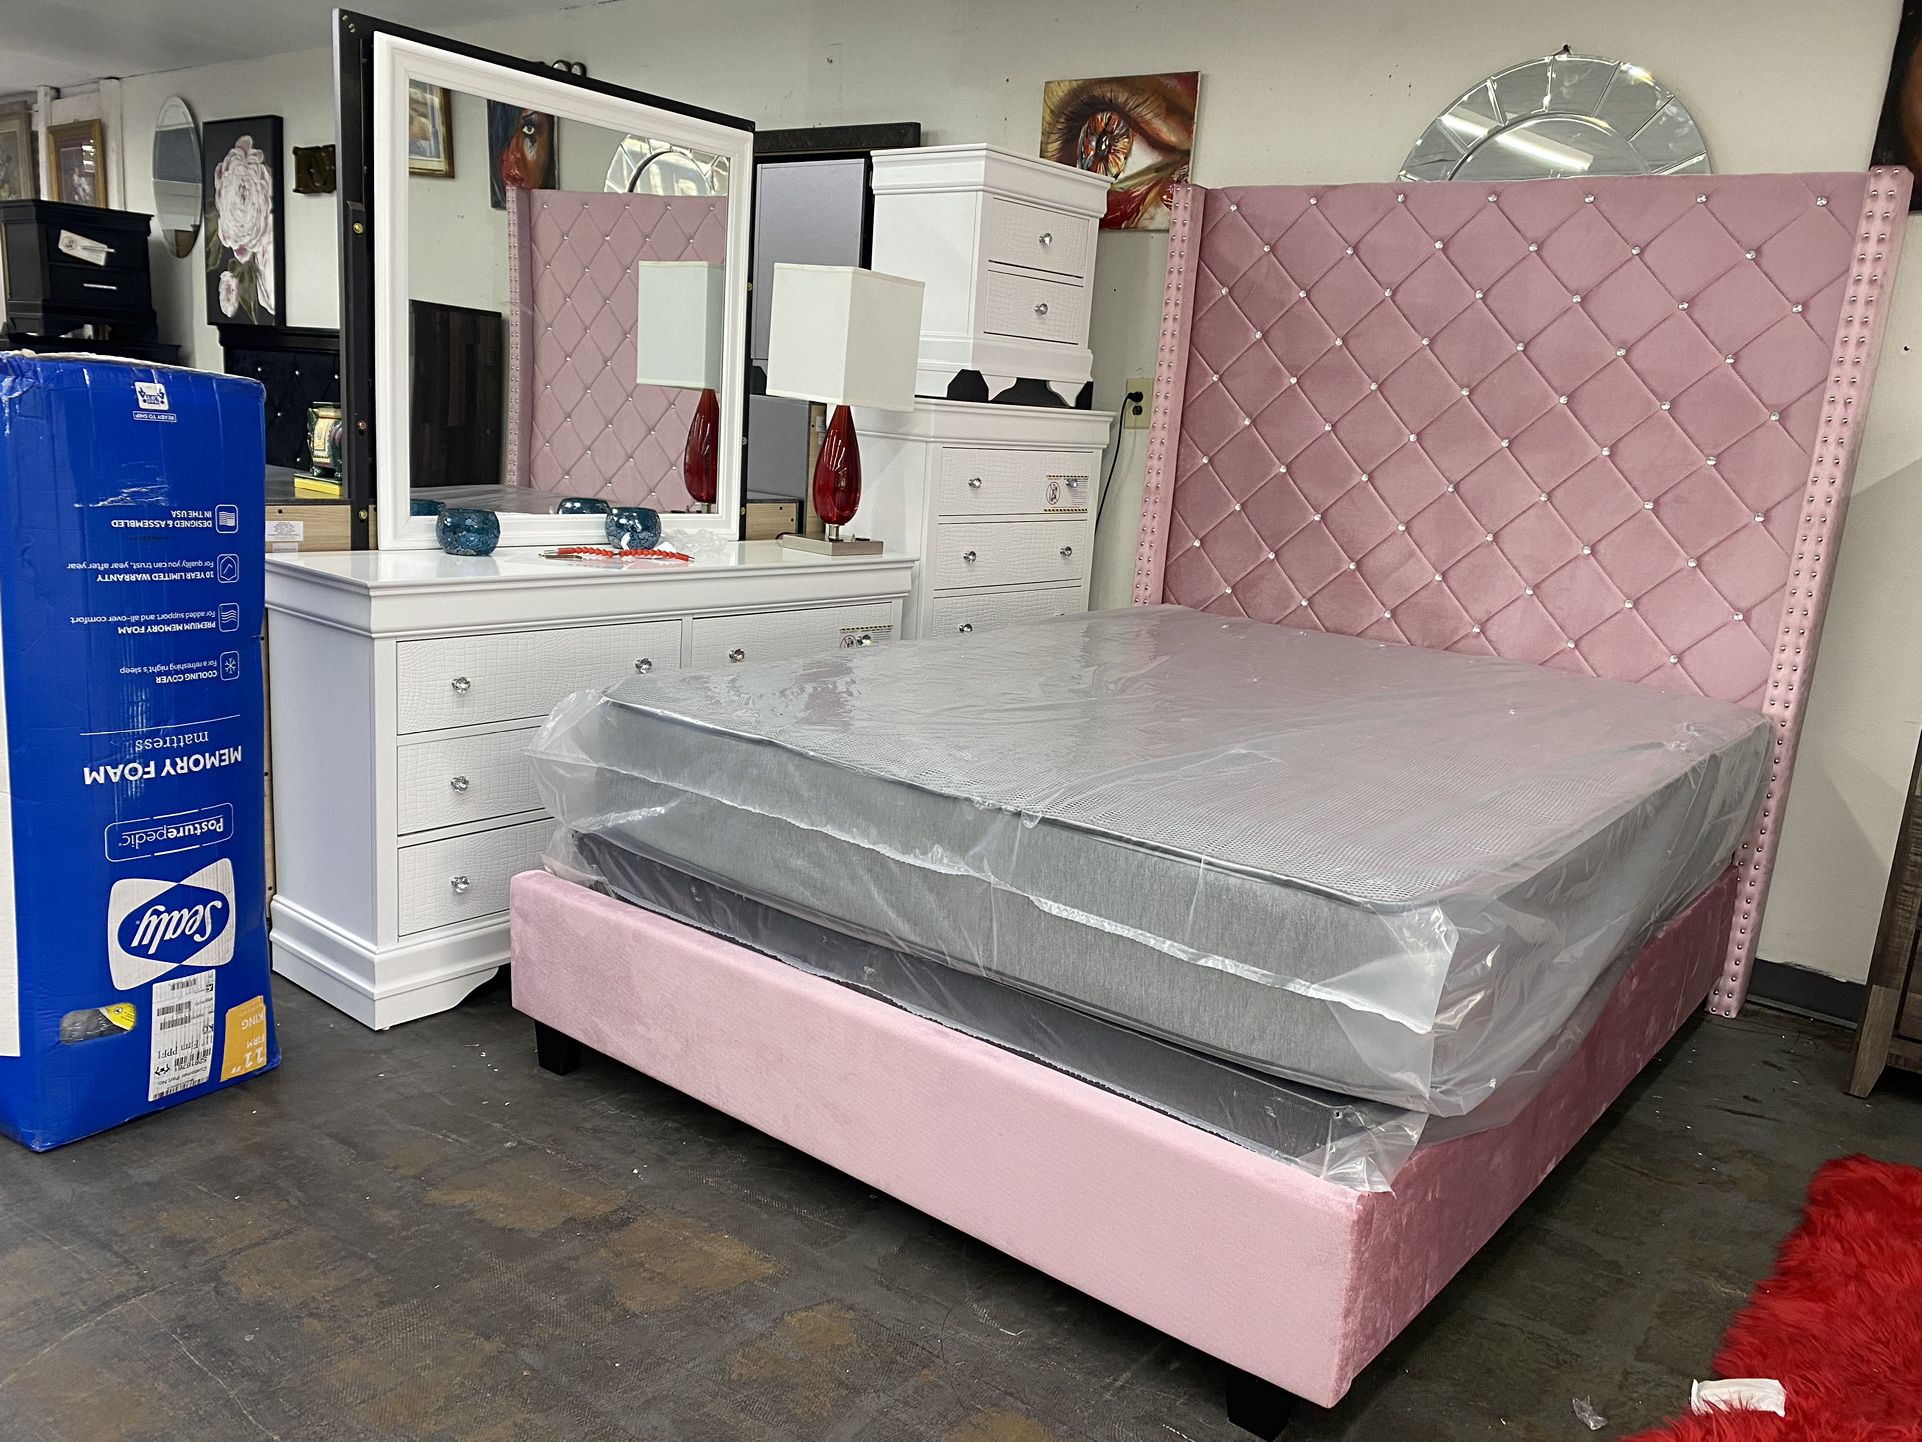 New Queen Bedroom Set For $1499